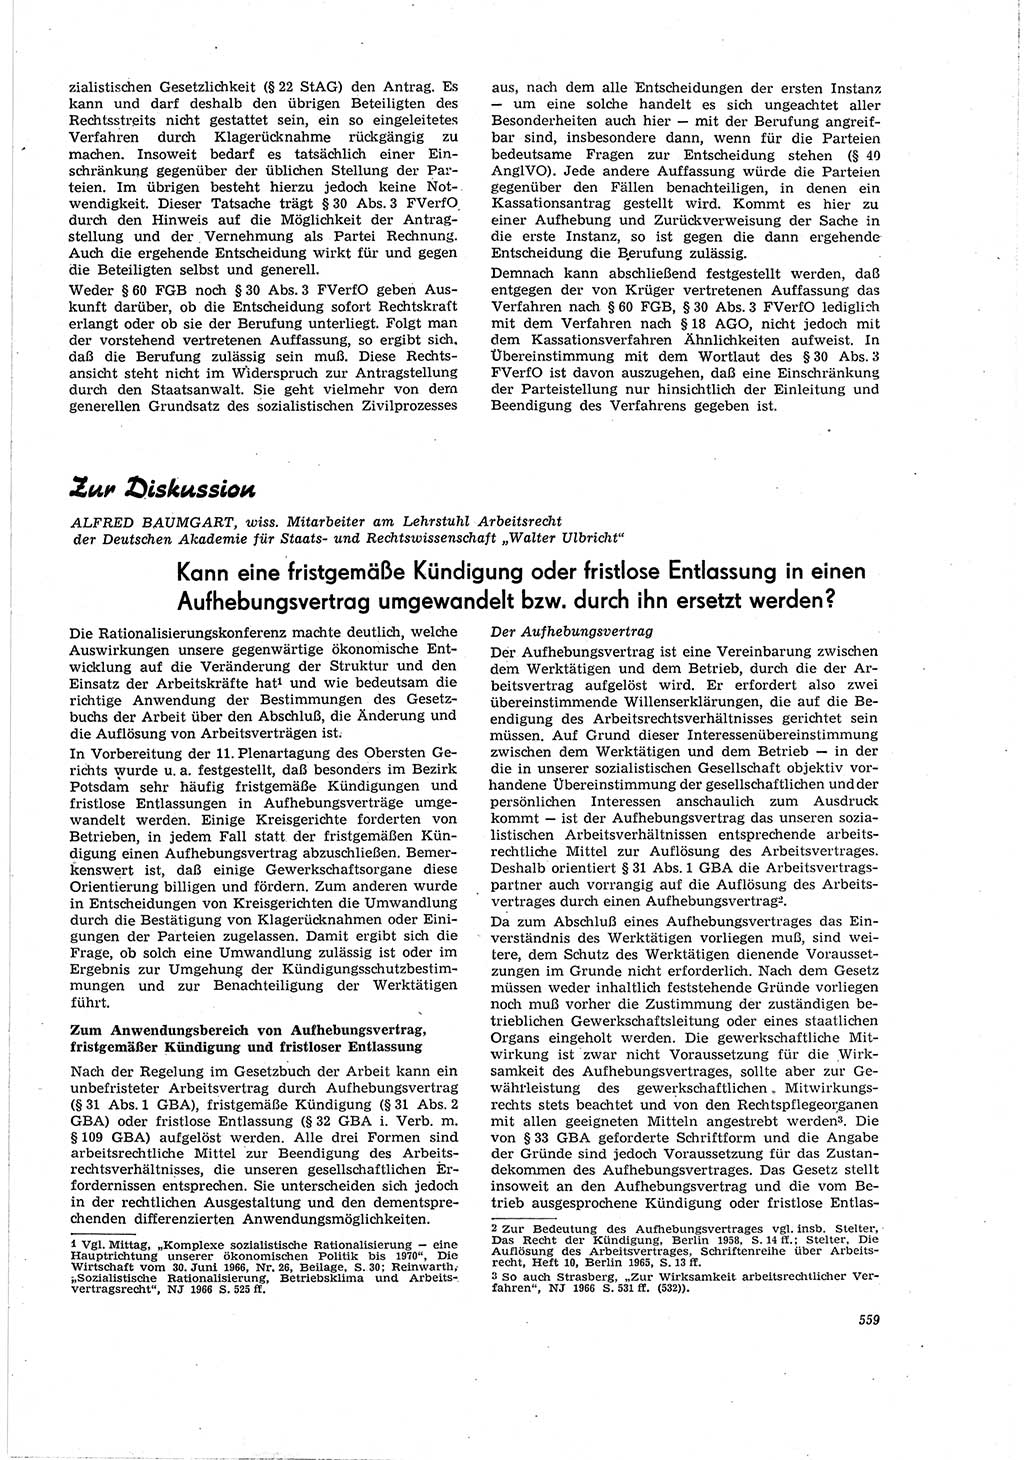 Neue Justiz (NJ), Zeitschrift für Recht und Rechtswissenschaft [Deutsche Demokratische Republik (DDR)], 20. Jahrgang 1966, Seite 559 (NJ DDR 1966, S. 559)